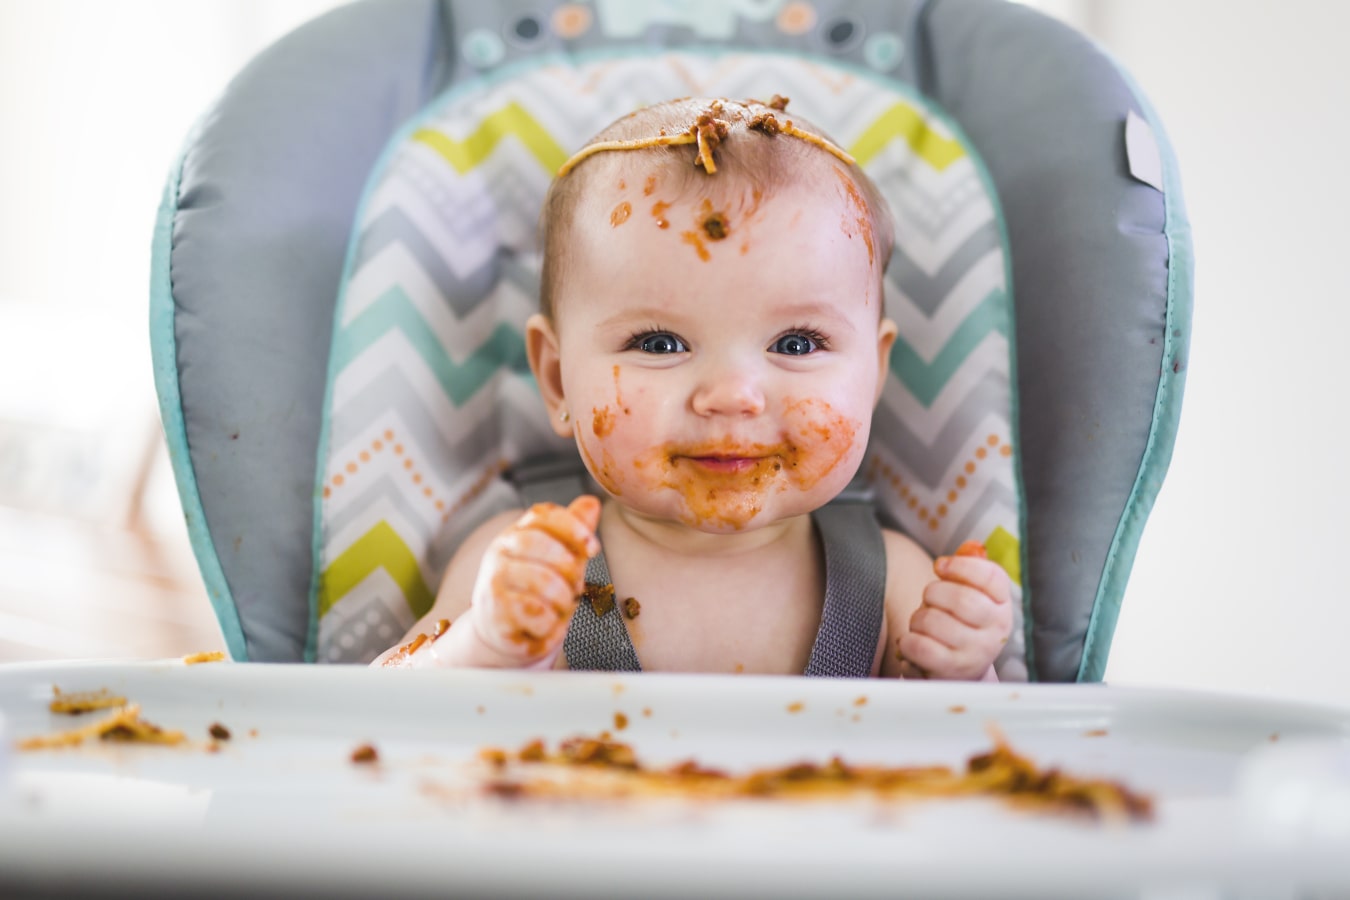 Il bambino, sporco di spaghetti, è seduto su un seggiolone. È felice e sorridente, e c'è molto cibo sia su di lui che sul vassoio.